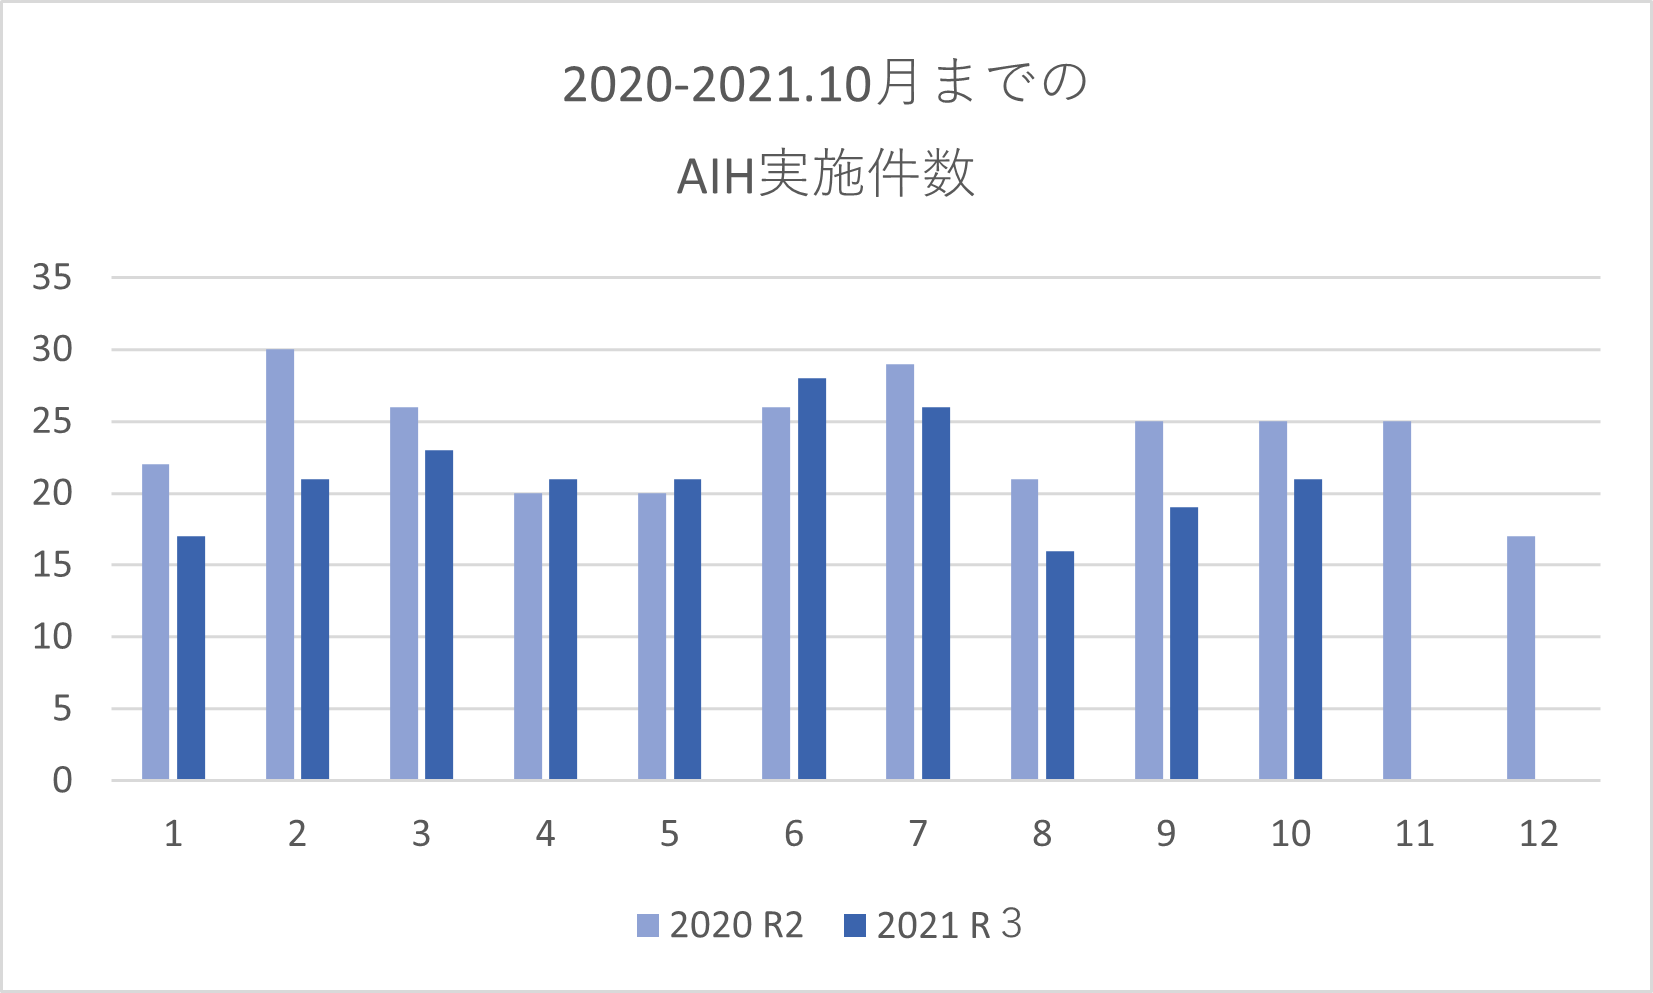 2020-2021.10月までのAIH件数